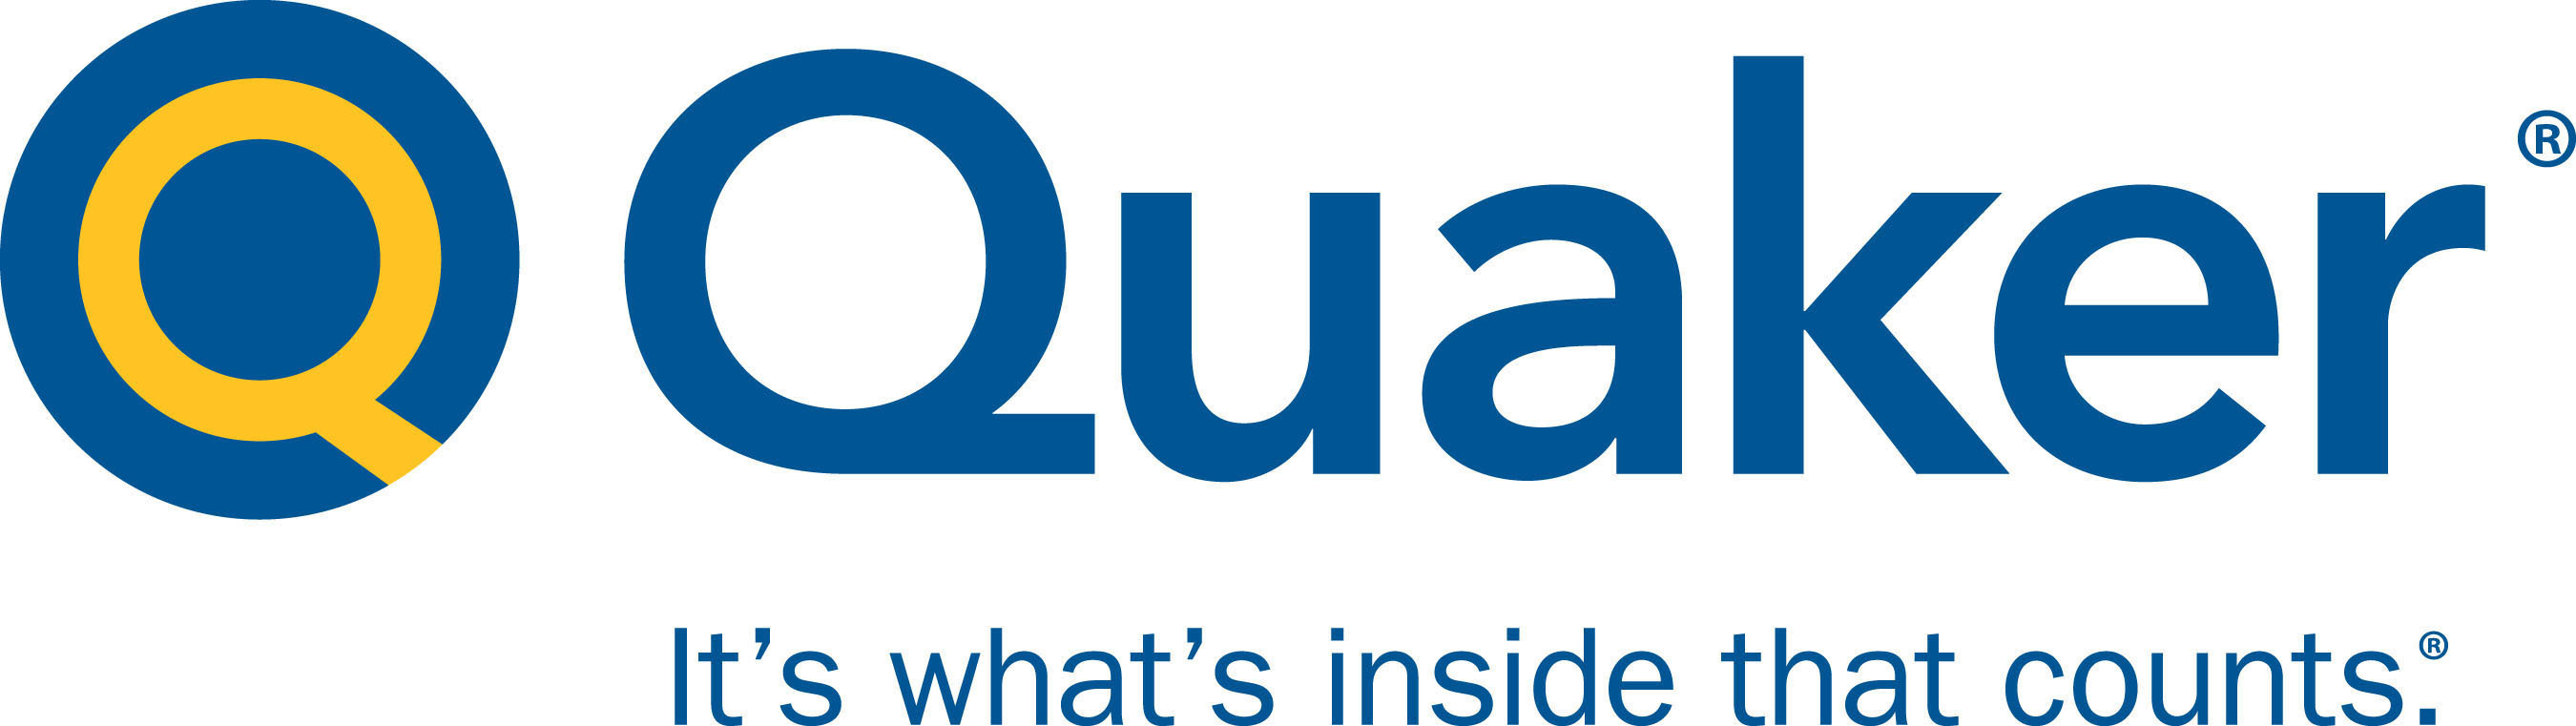 Quaker Chemical logo